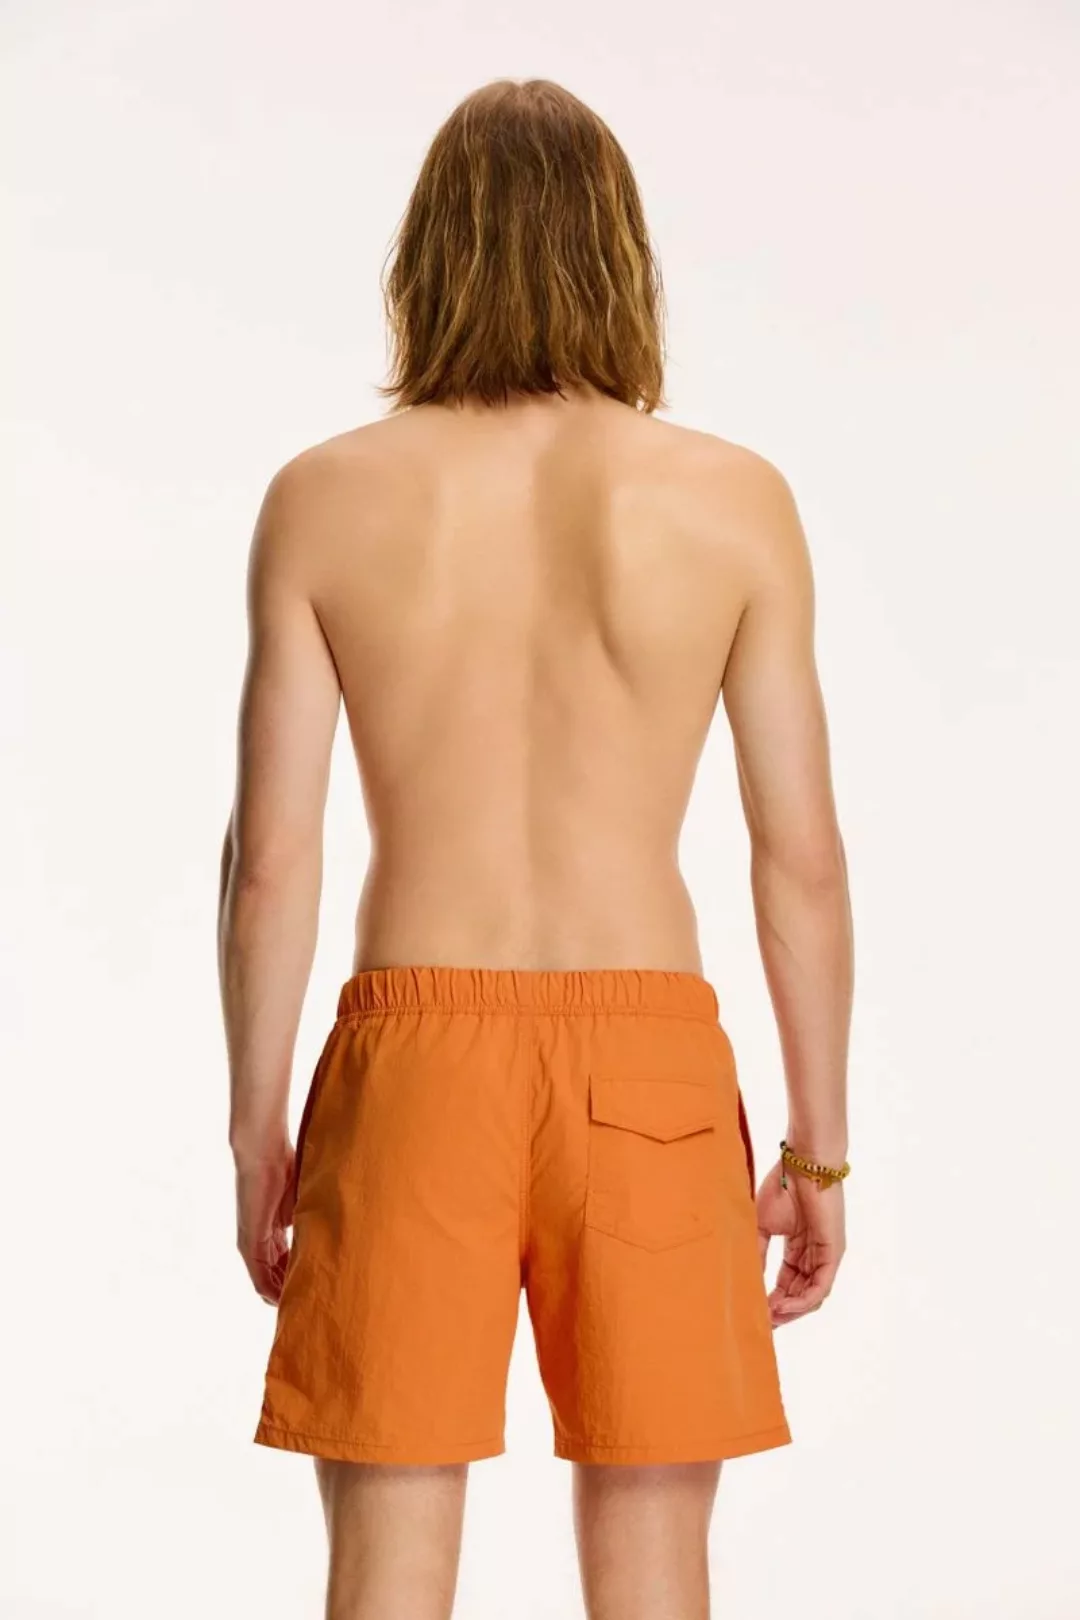 Shiwi Badeshorts Nick Desert Orange - Größe S günstig online kaufen